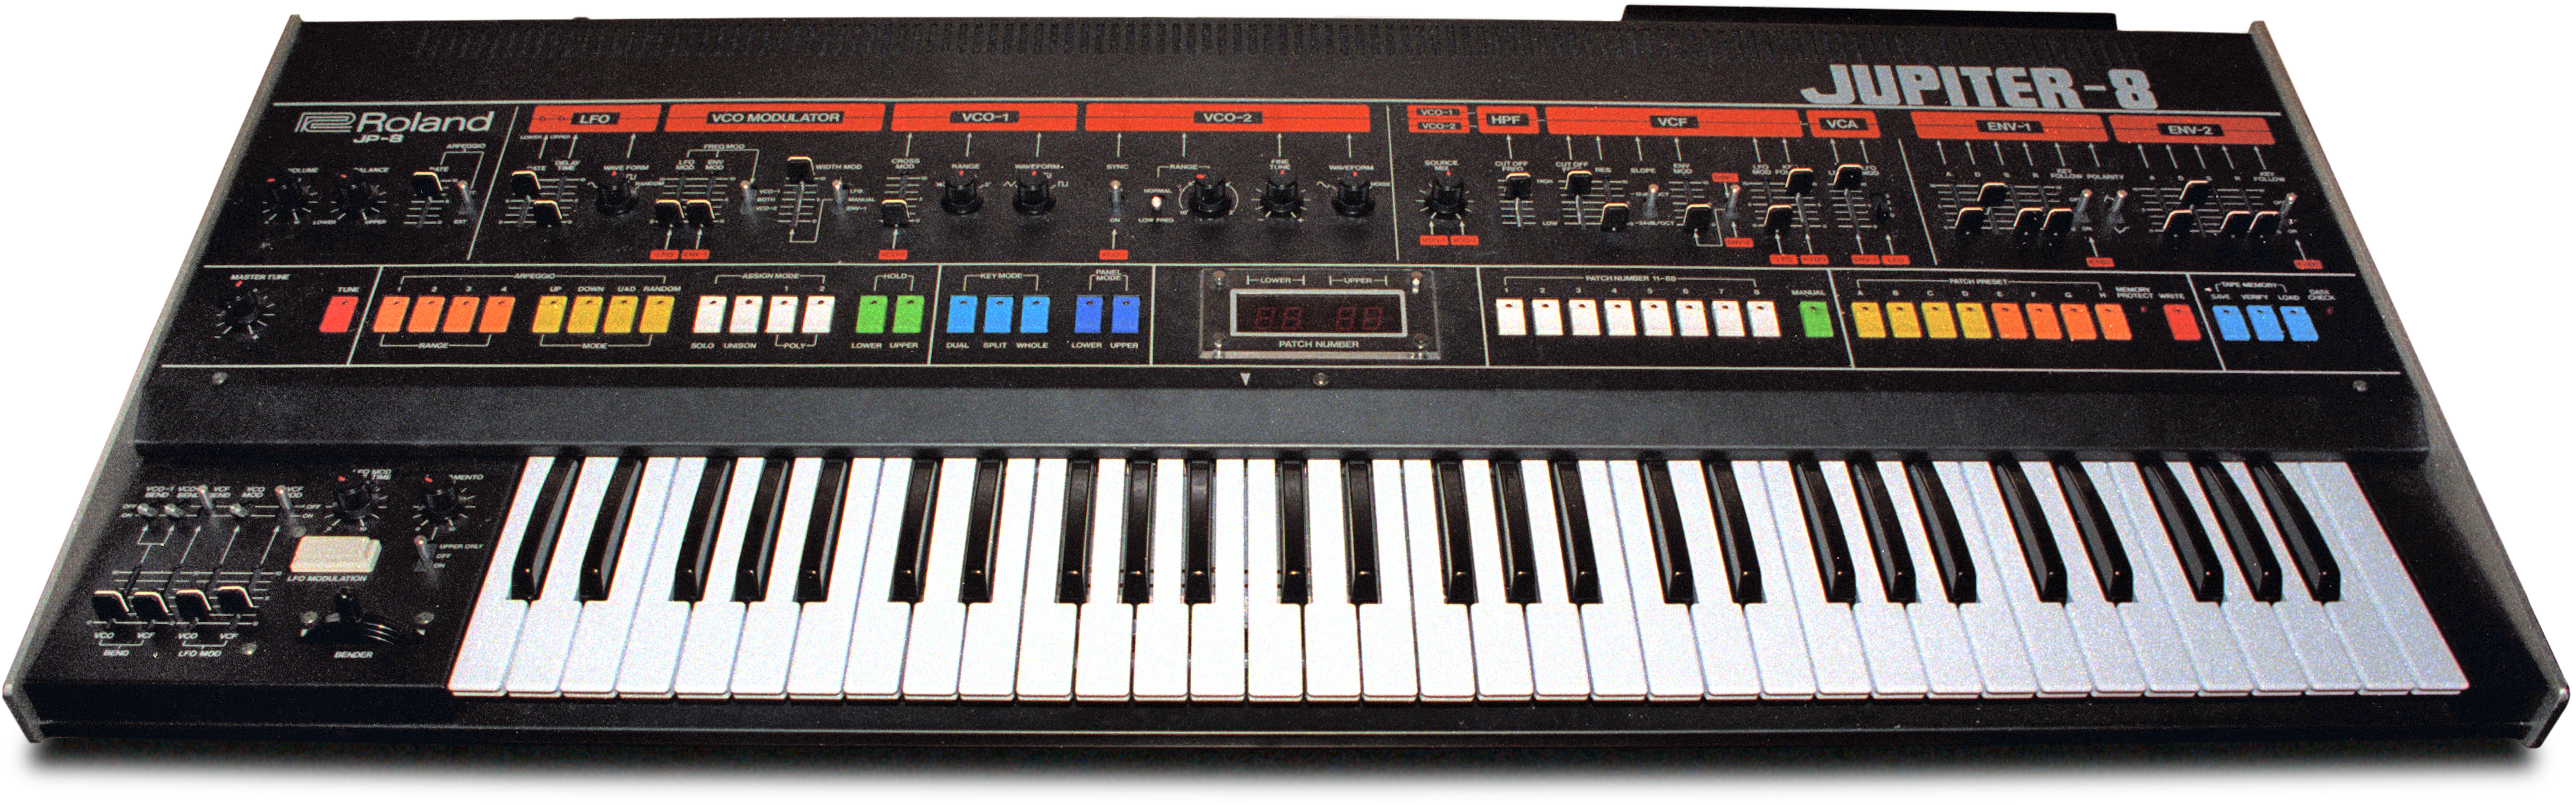 Roland Jupiter-8 Synth, 1983 - Roland Jupiter 8 (2741x959), Png Download